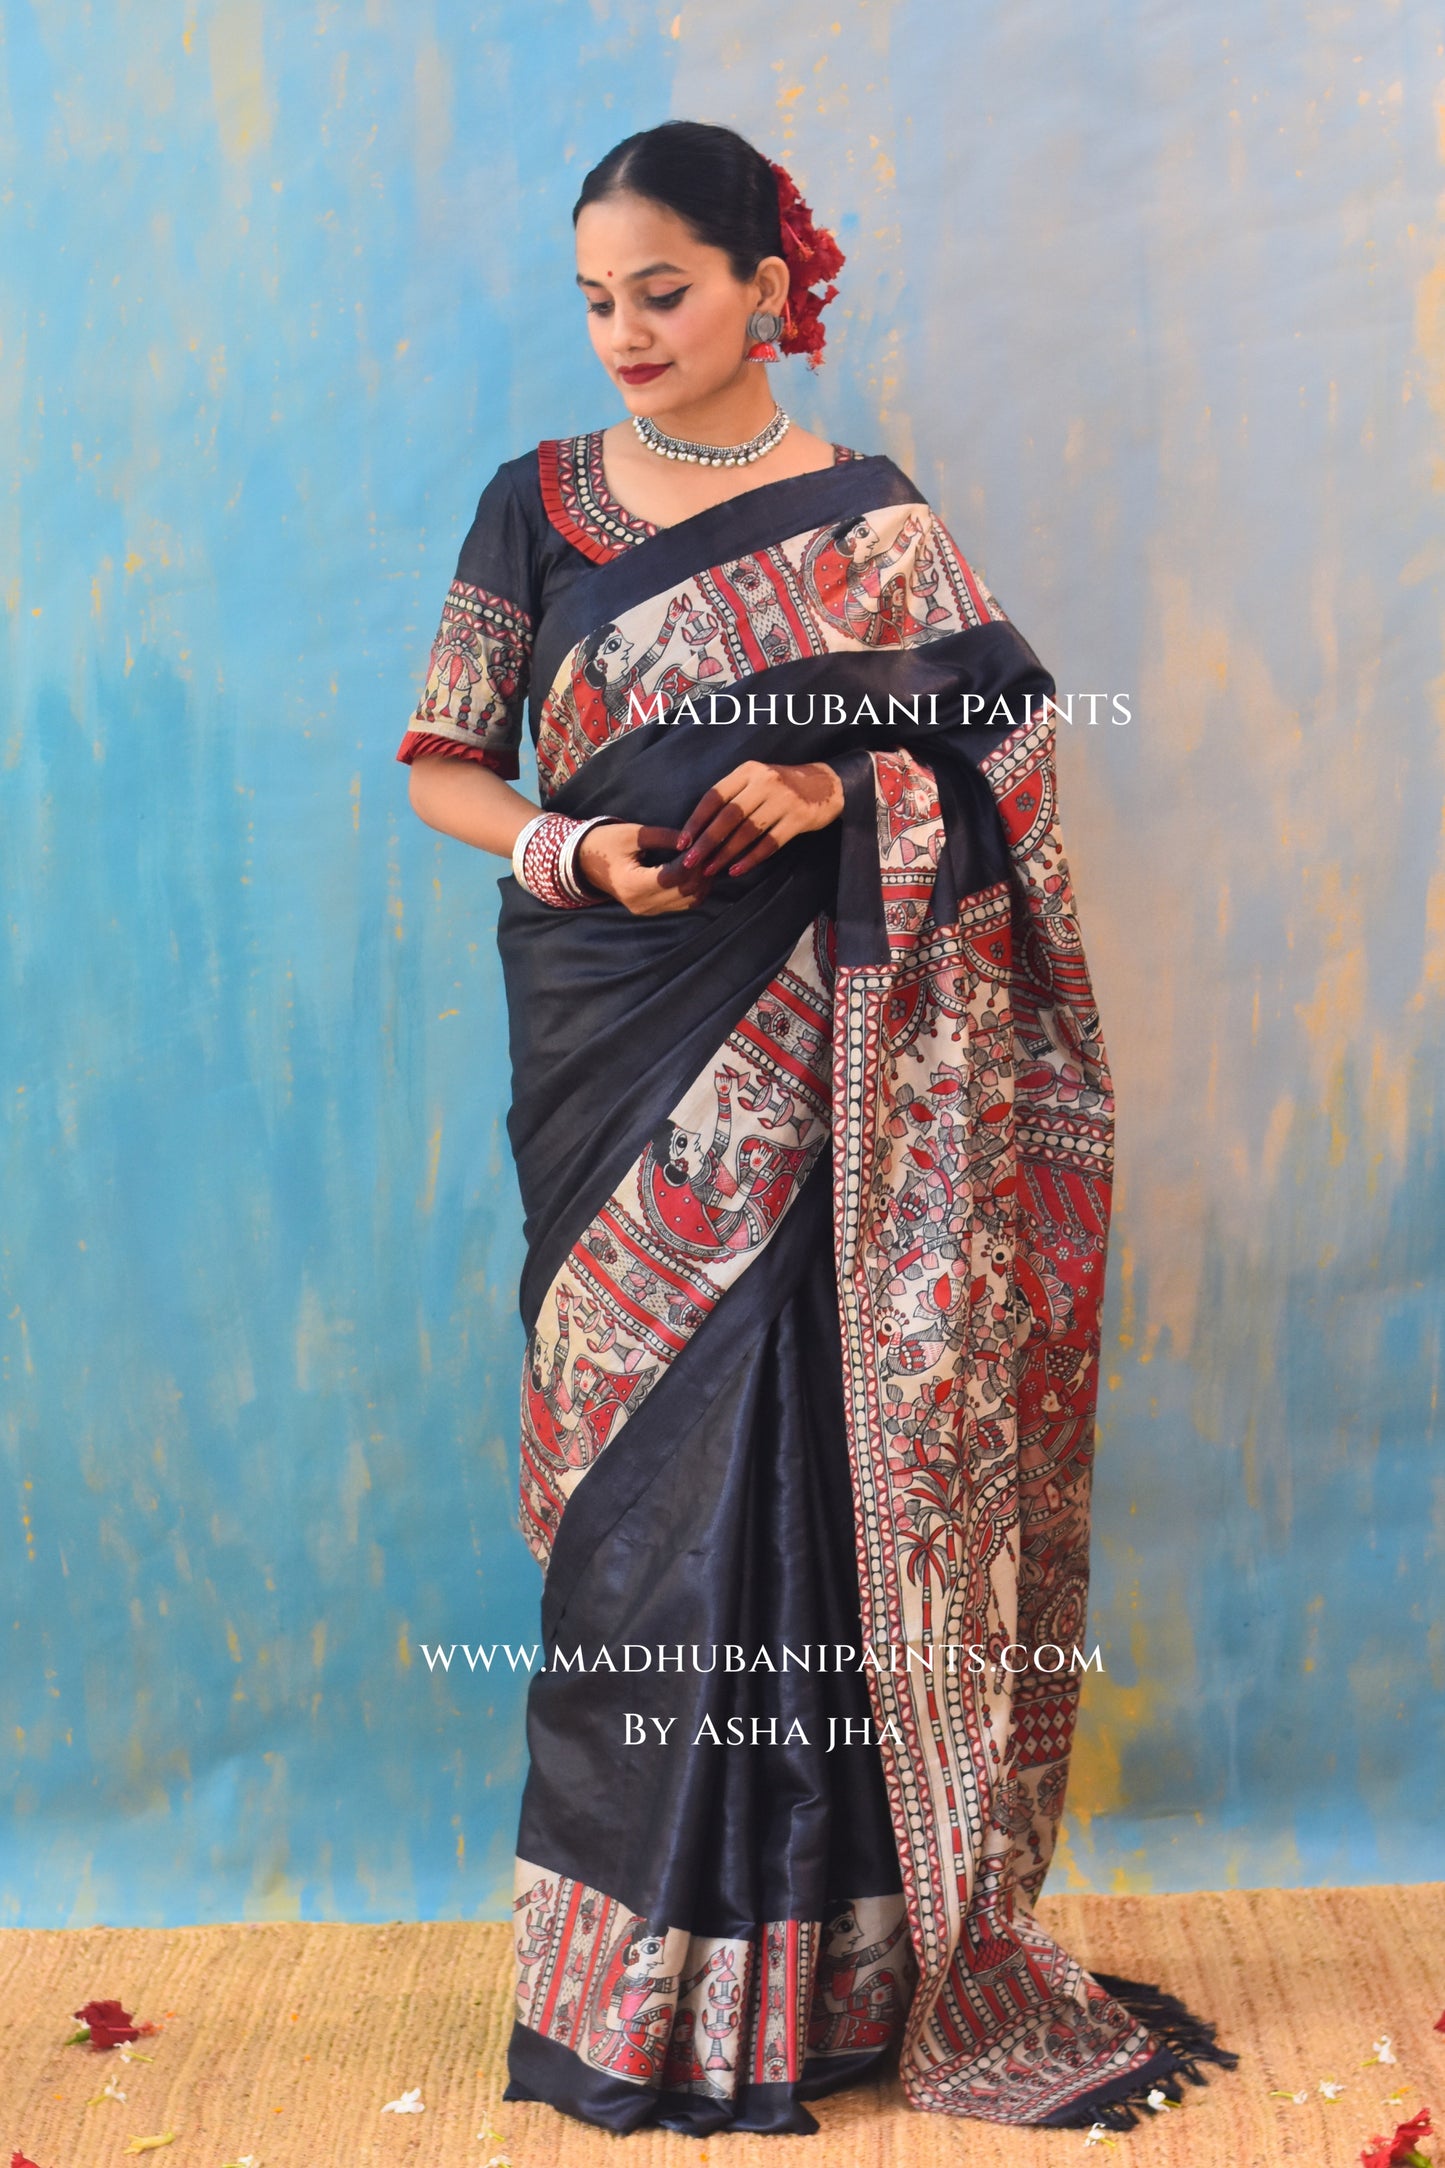 SHAMBHAVI Hand-painted Tussar Silk Saree Blouse Set